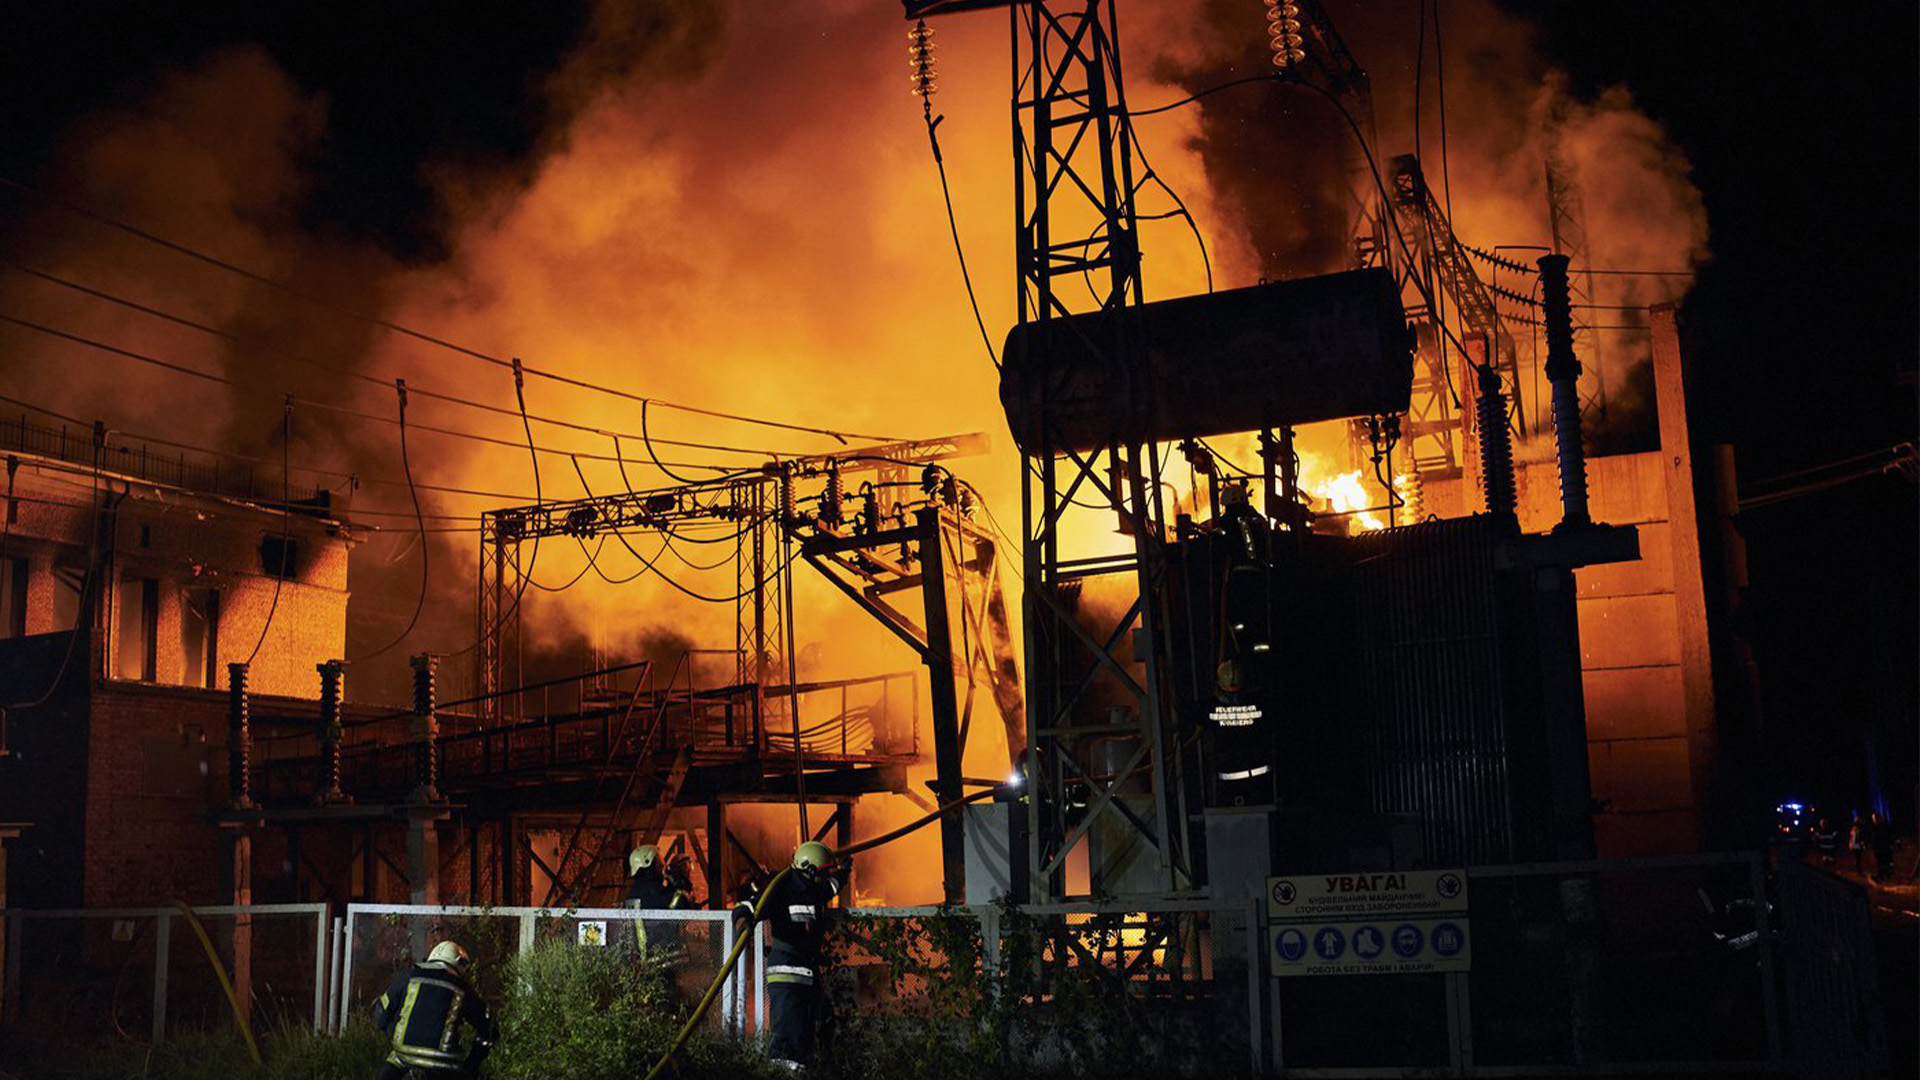 Les pompiers des services d'urgence de l'État ukrainien ont éteint l'incendie après qu'une attaque à la roquette russe a frappé une centrale électrique à Kharkiv, en Ukraine, le dimanche 11 septembre 2022. Les régions de Kharkiv et de Donetsk ont été complètement déconnectées lors de l'attaque à la roquette.